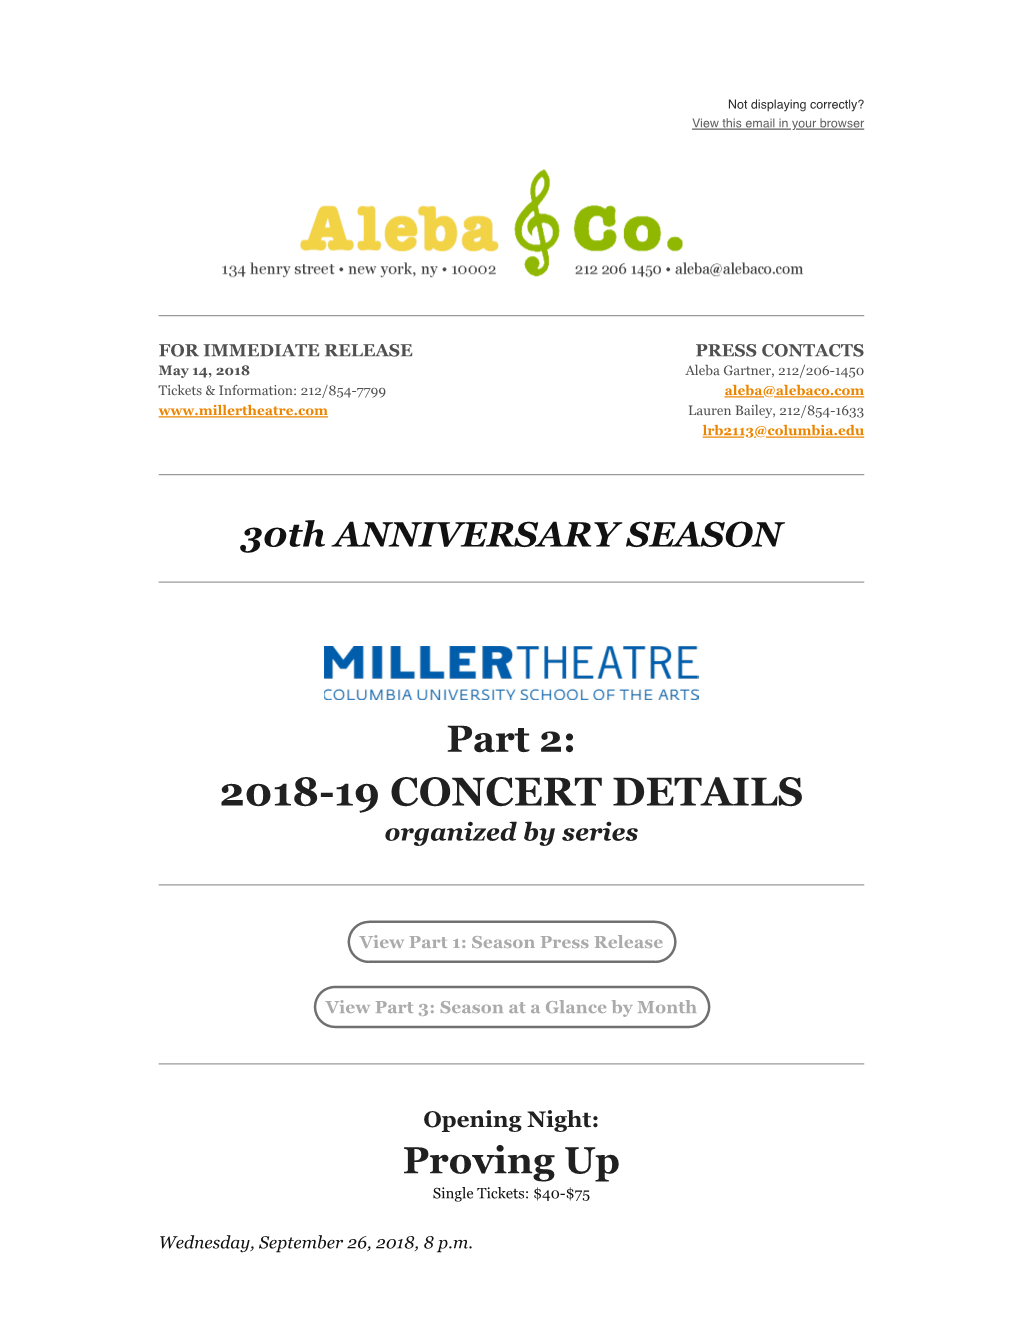 201819 Concert Details